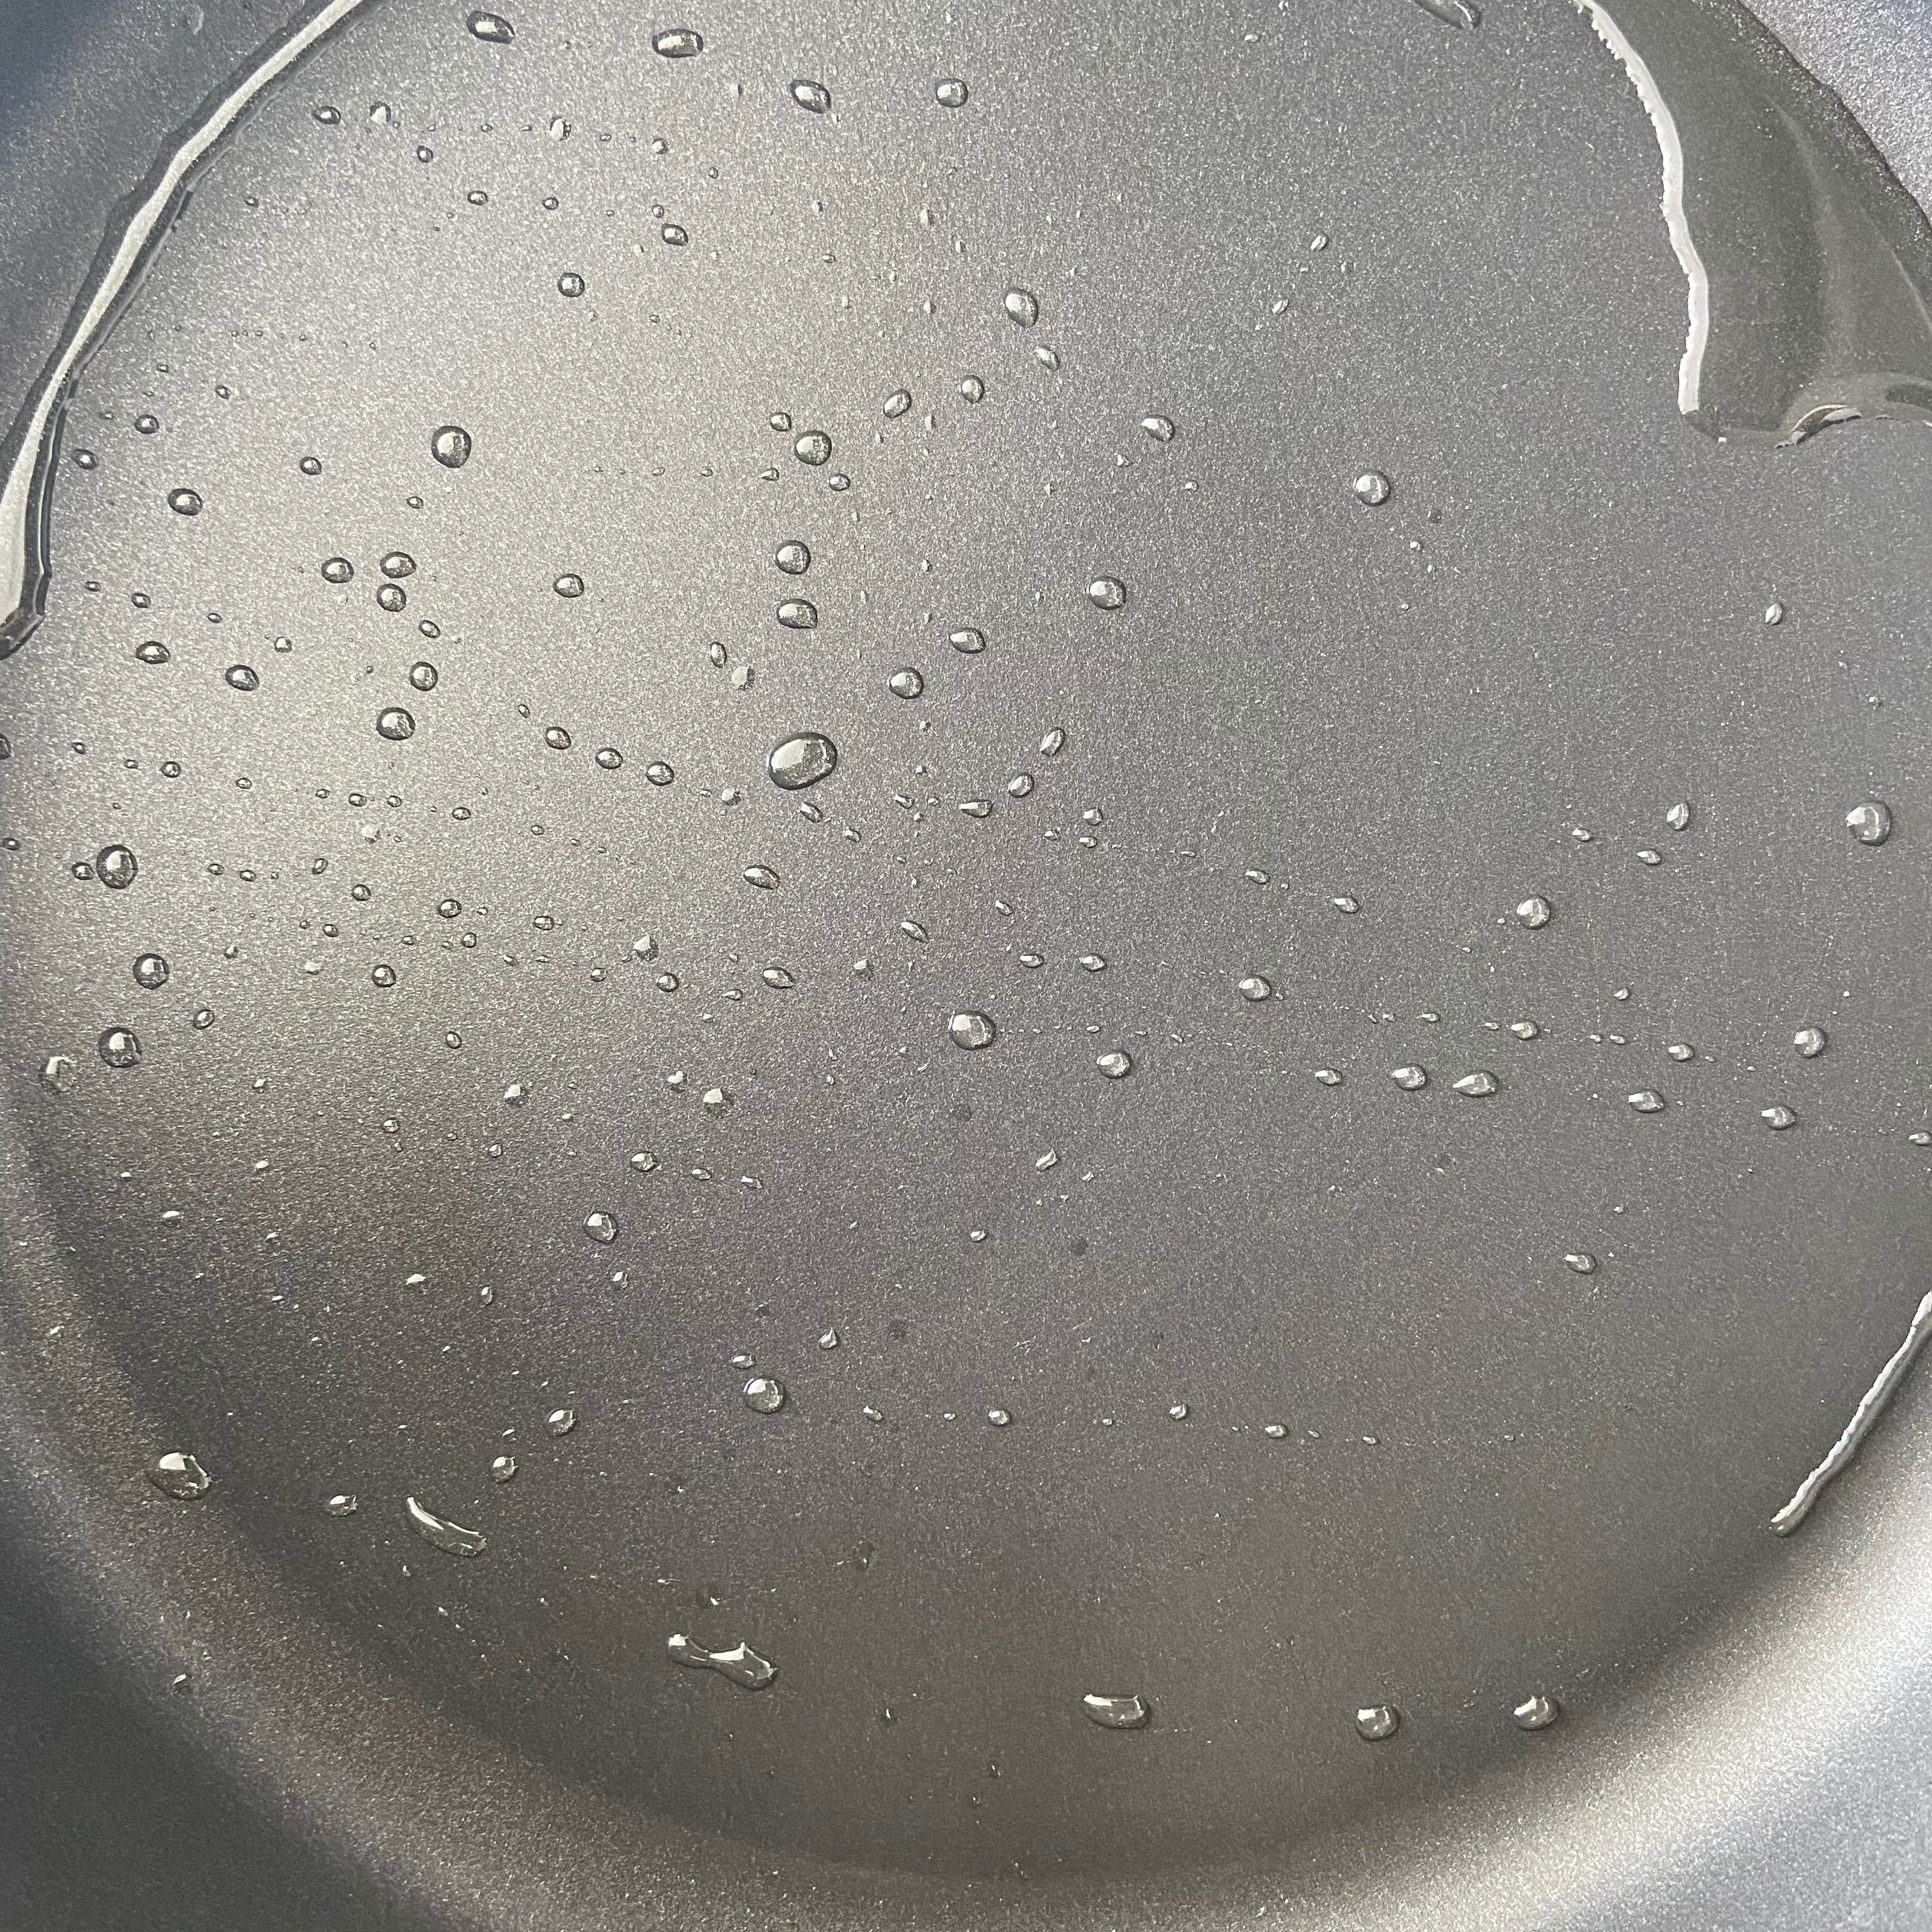 Heat oil in a pan.